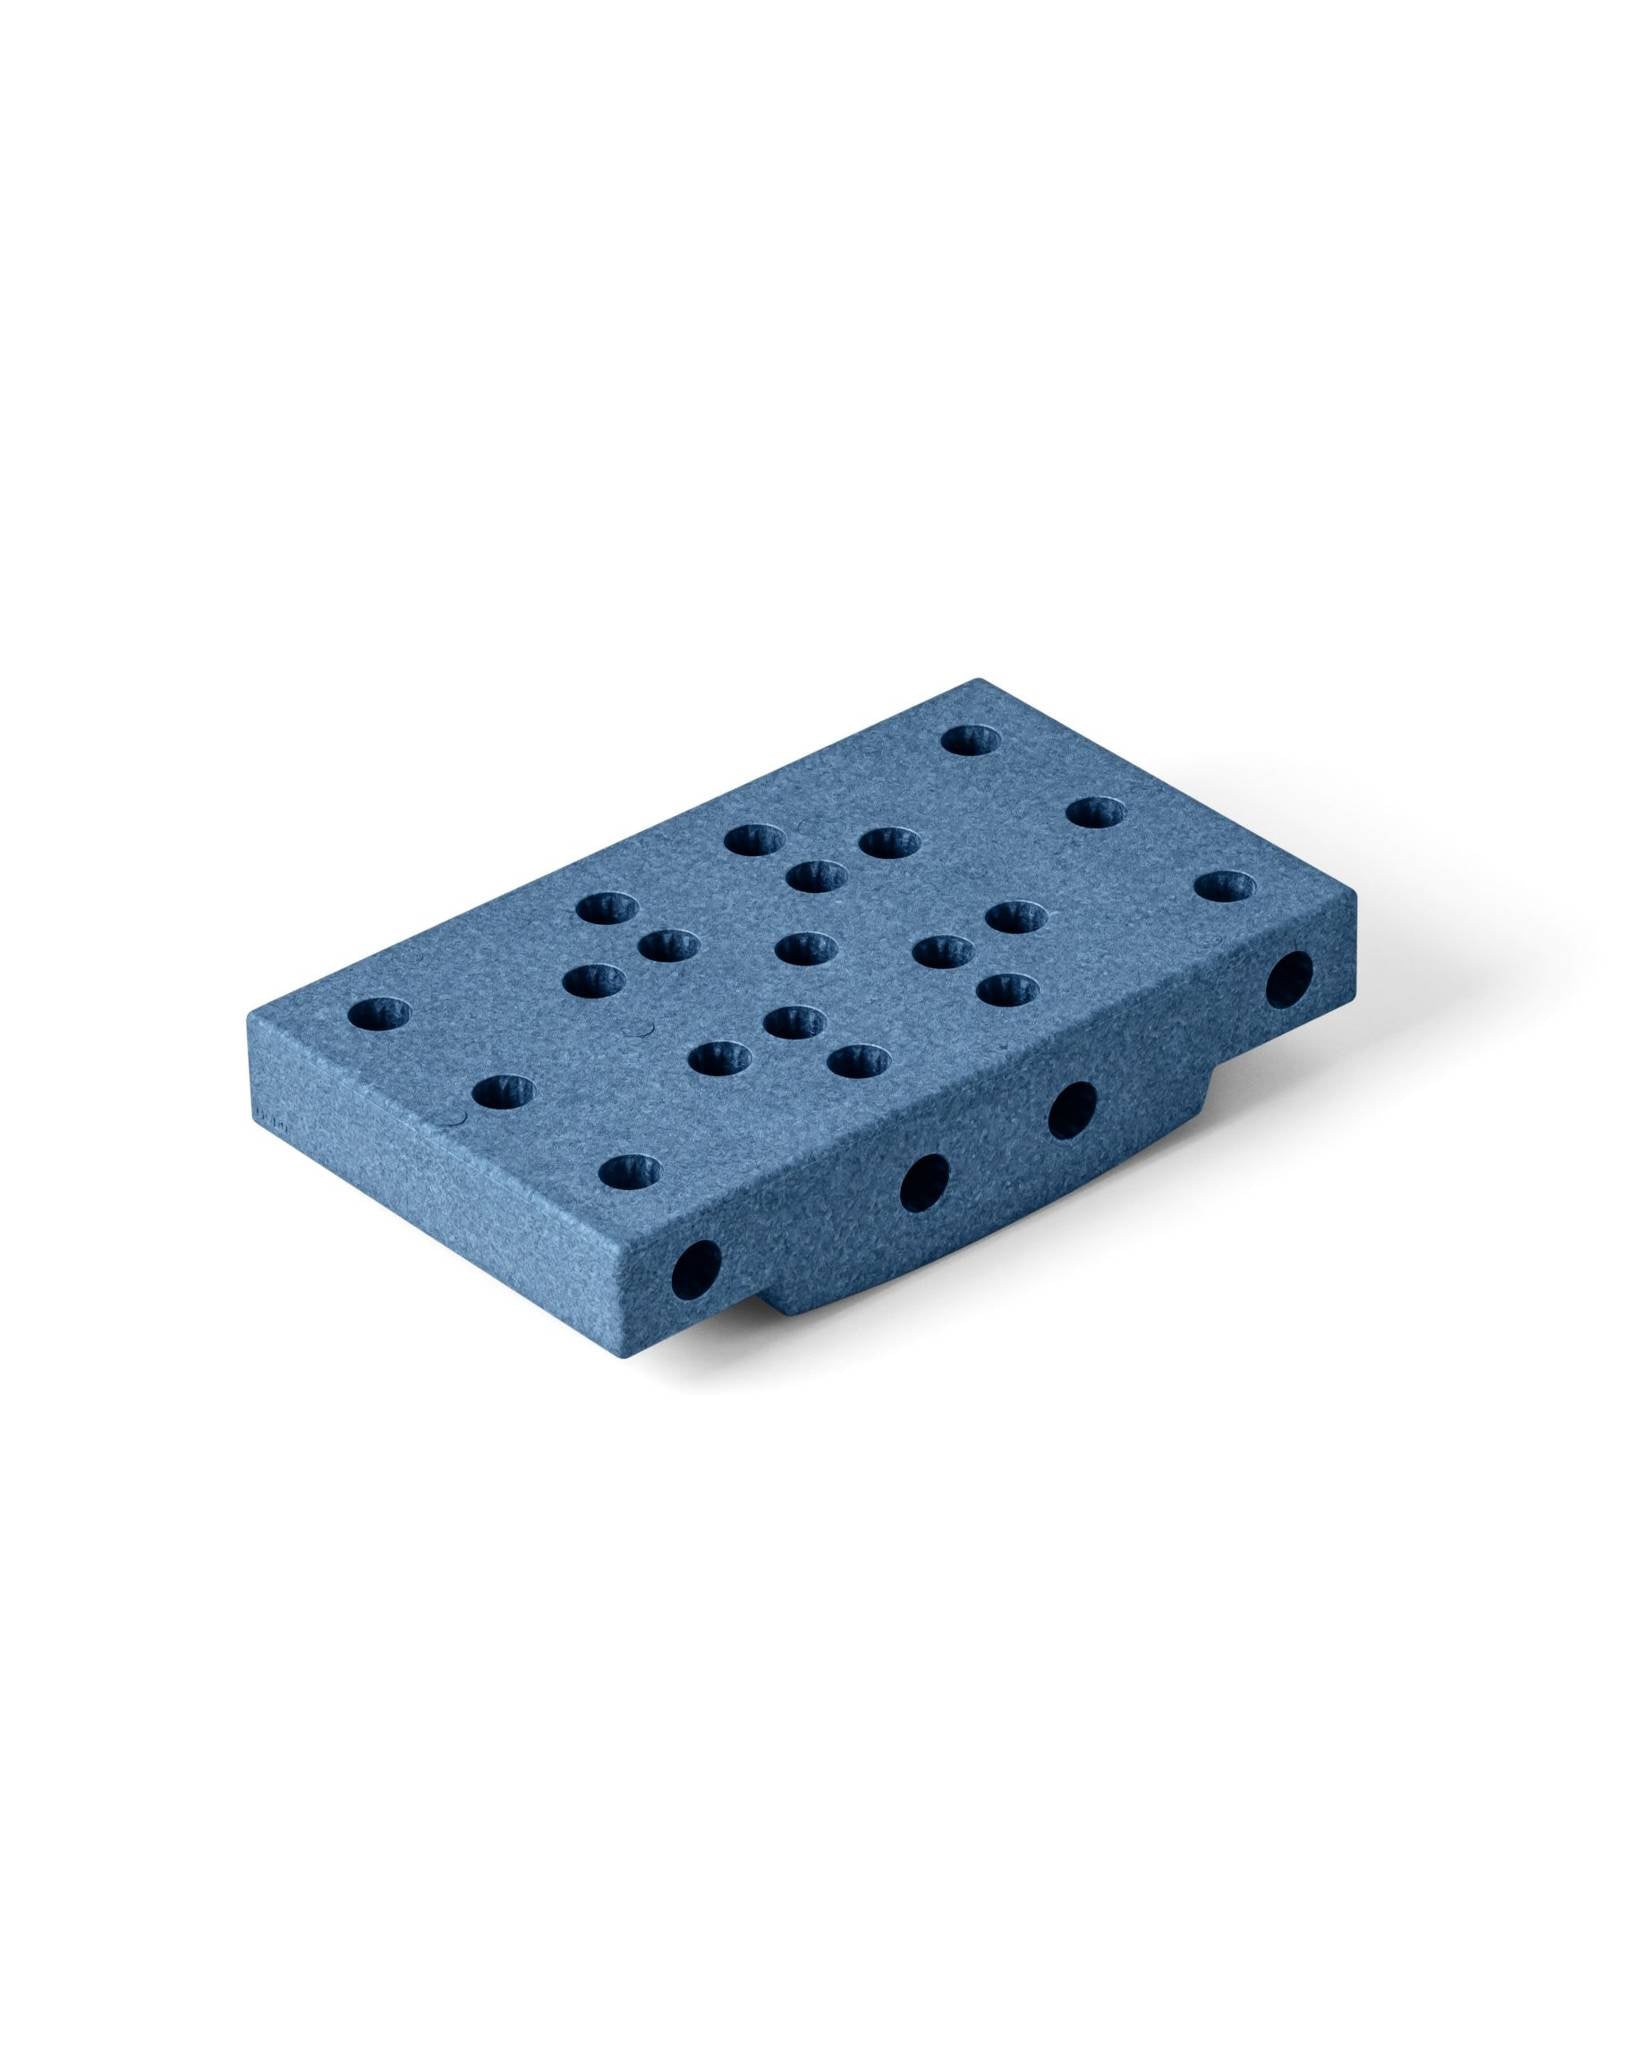 Modul - Blockbasis - Sensorischer Schaumstoffblock, blau